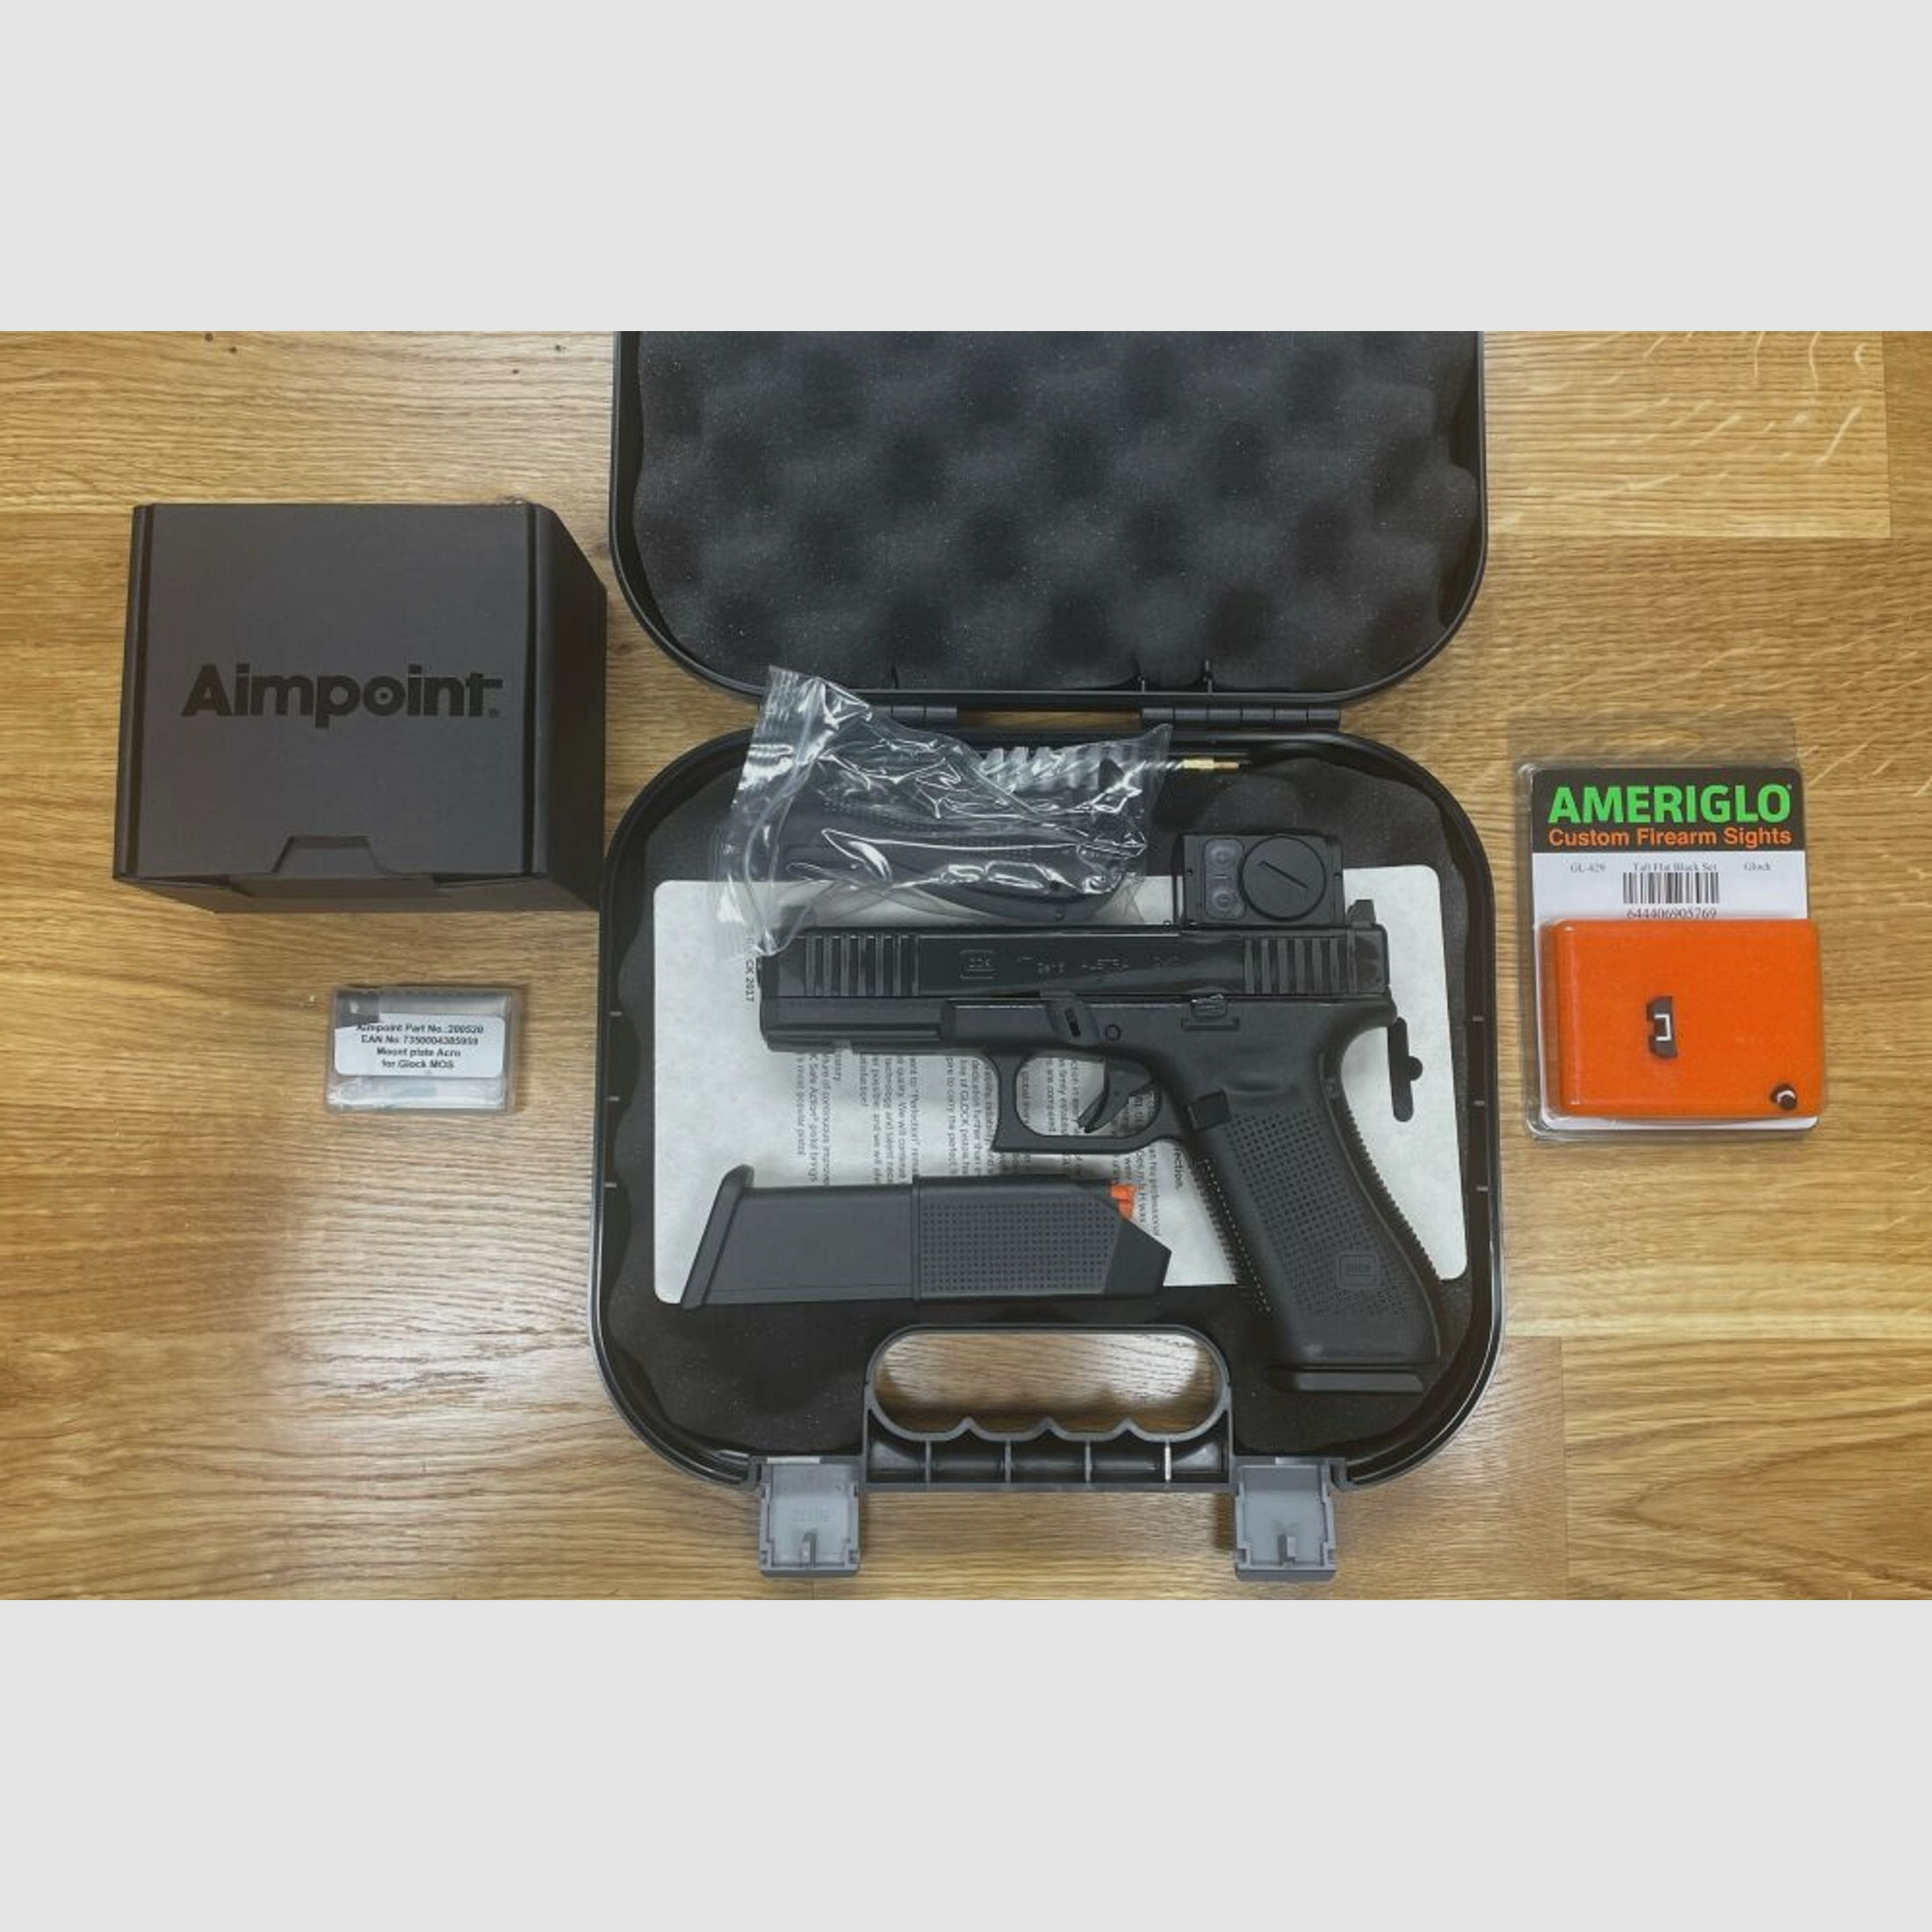 Glock 17 Gen5 MOS mit Aimpoint ACRO P-2 + AMERIGLO SD Sights	 inkl. Aimpoint Adapter Platte für Aimpoint, alles montiert! Nachtsichtstufen